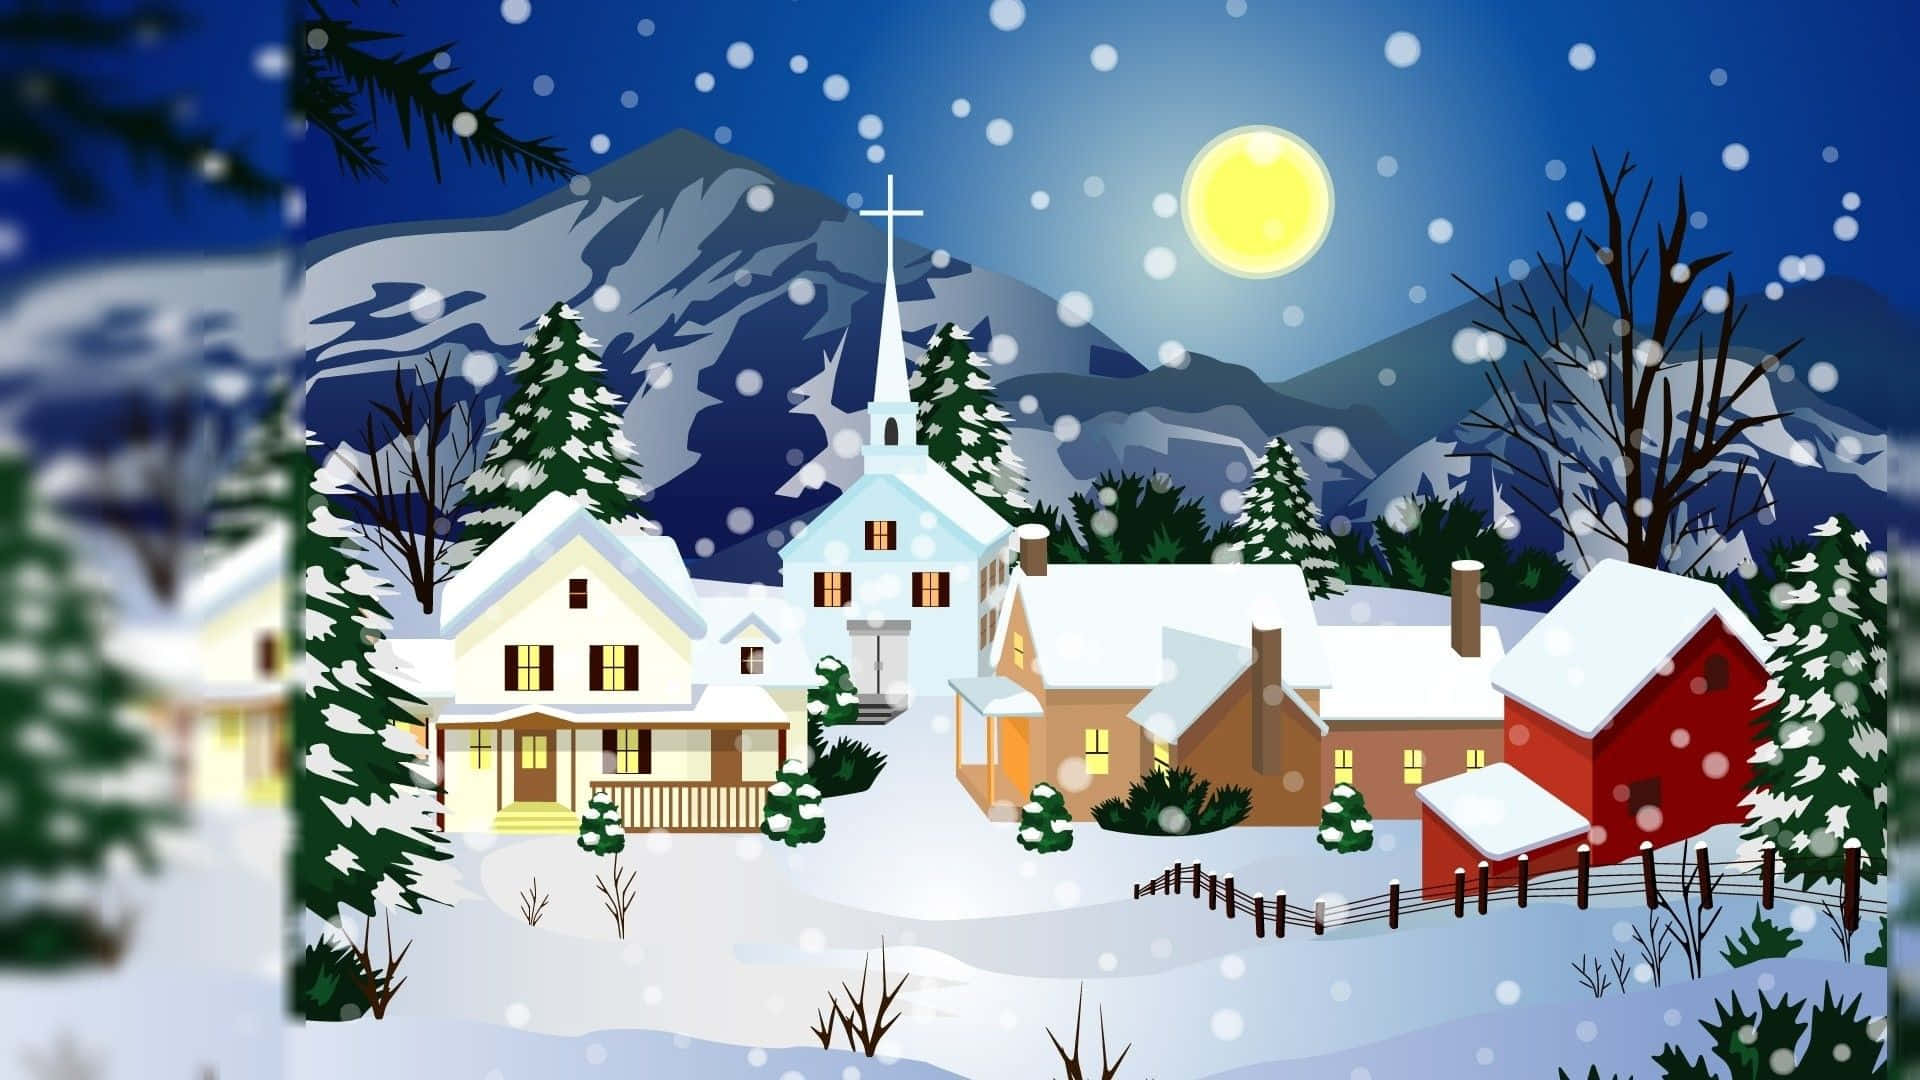 Cartelde Navidad De Dibujos Animados En Un Pueblo Nevado De Navidad. Fondo de pantalla